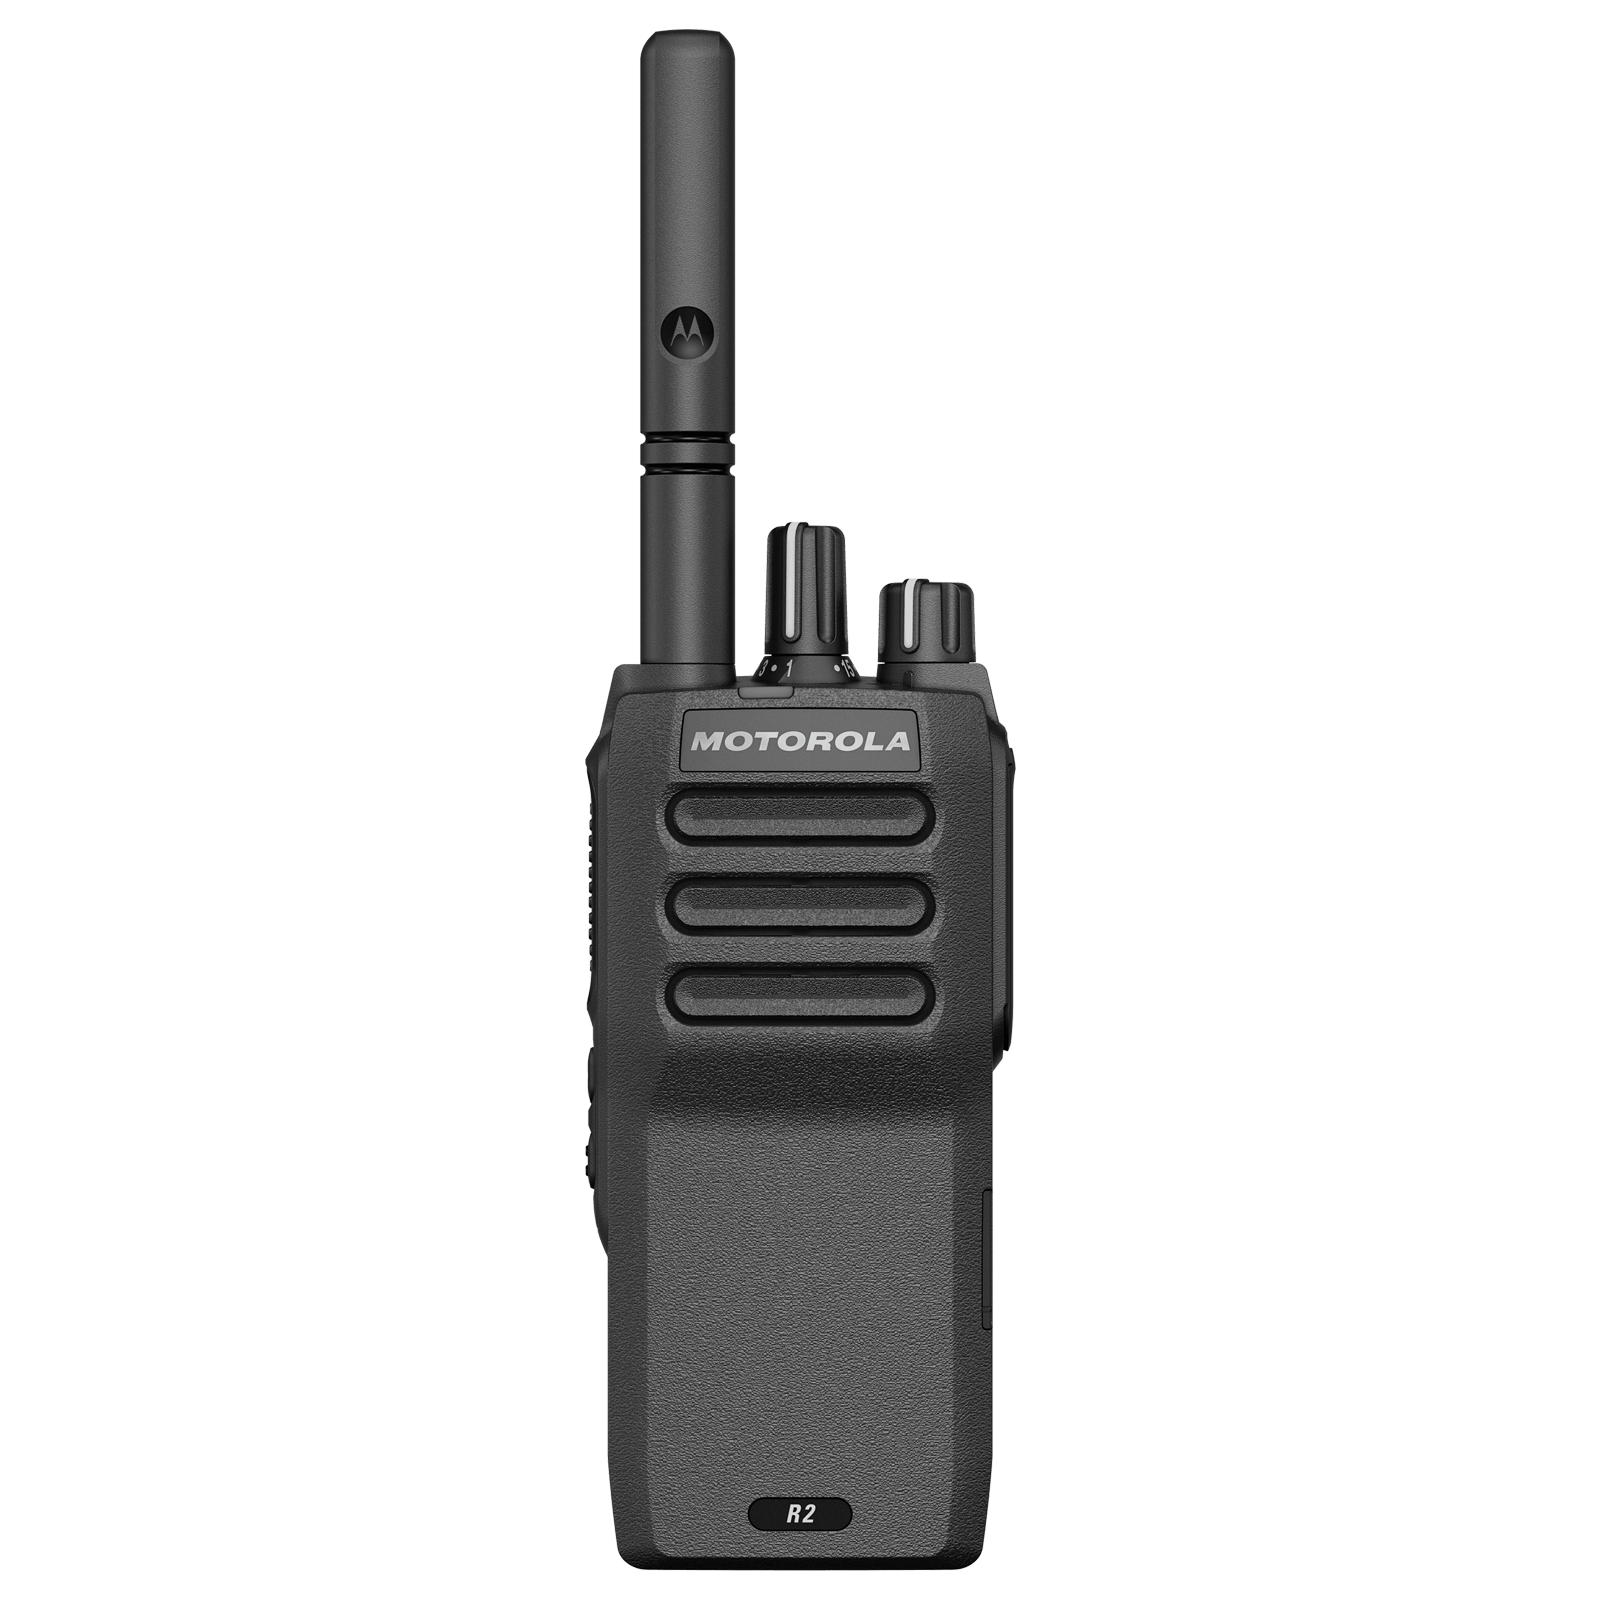 Telestar System Telecommunications Rome (Italy) MOTOTRBO™ Digital Portable Radios Motorola Solutions R2